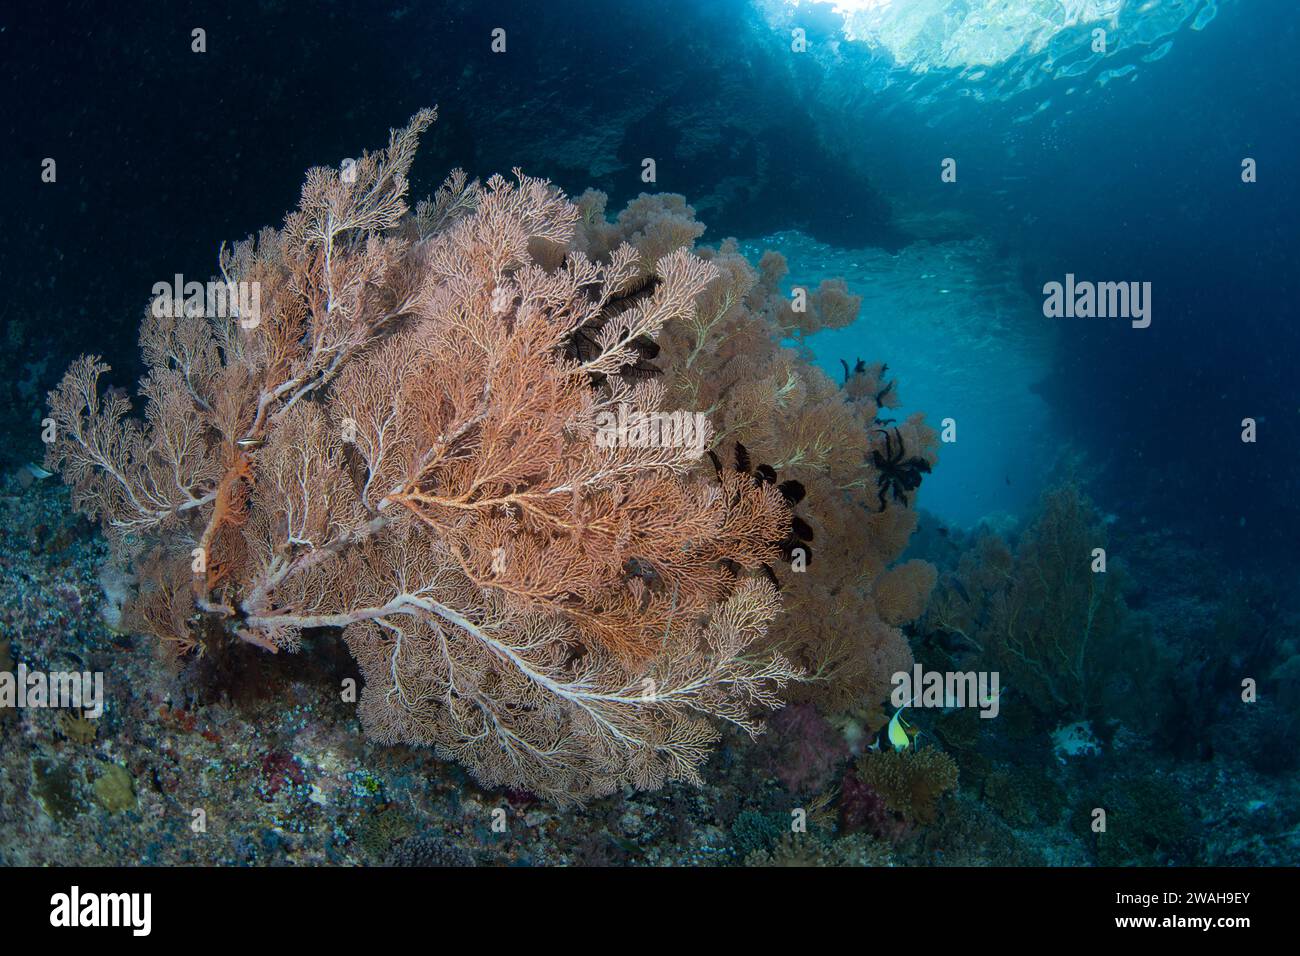 Grandi gorgonie colorate prosperano su una barriera corallina poco profonda e spazzata dalla corrente a Raja Ampat, Indonesia. Questa regione sostiene un'elevata biodiversità marina. Foto Stock